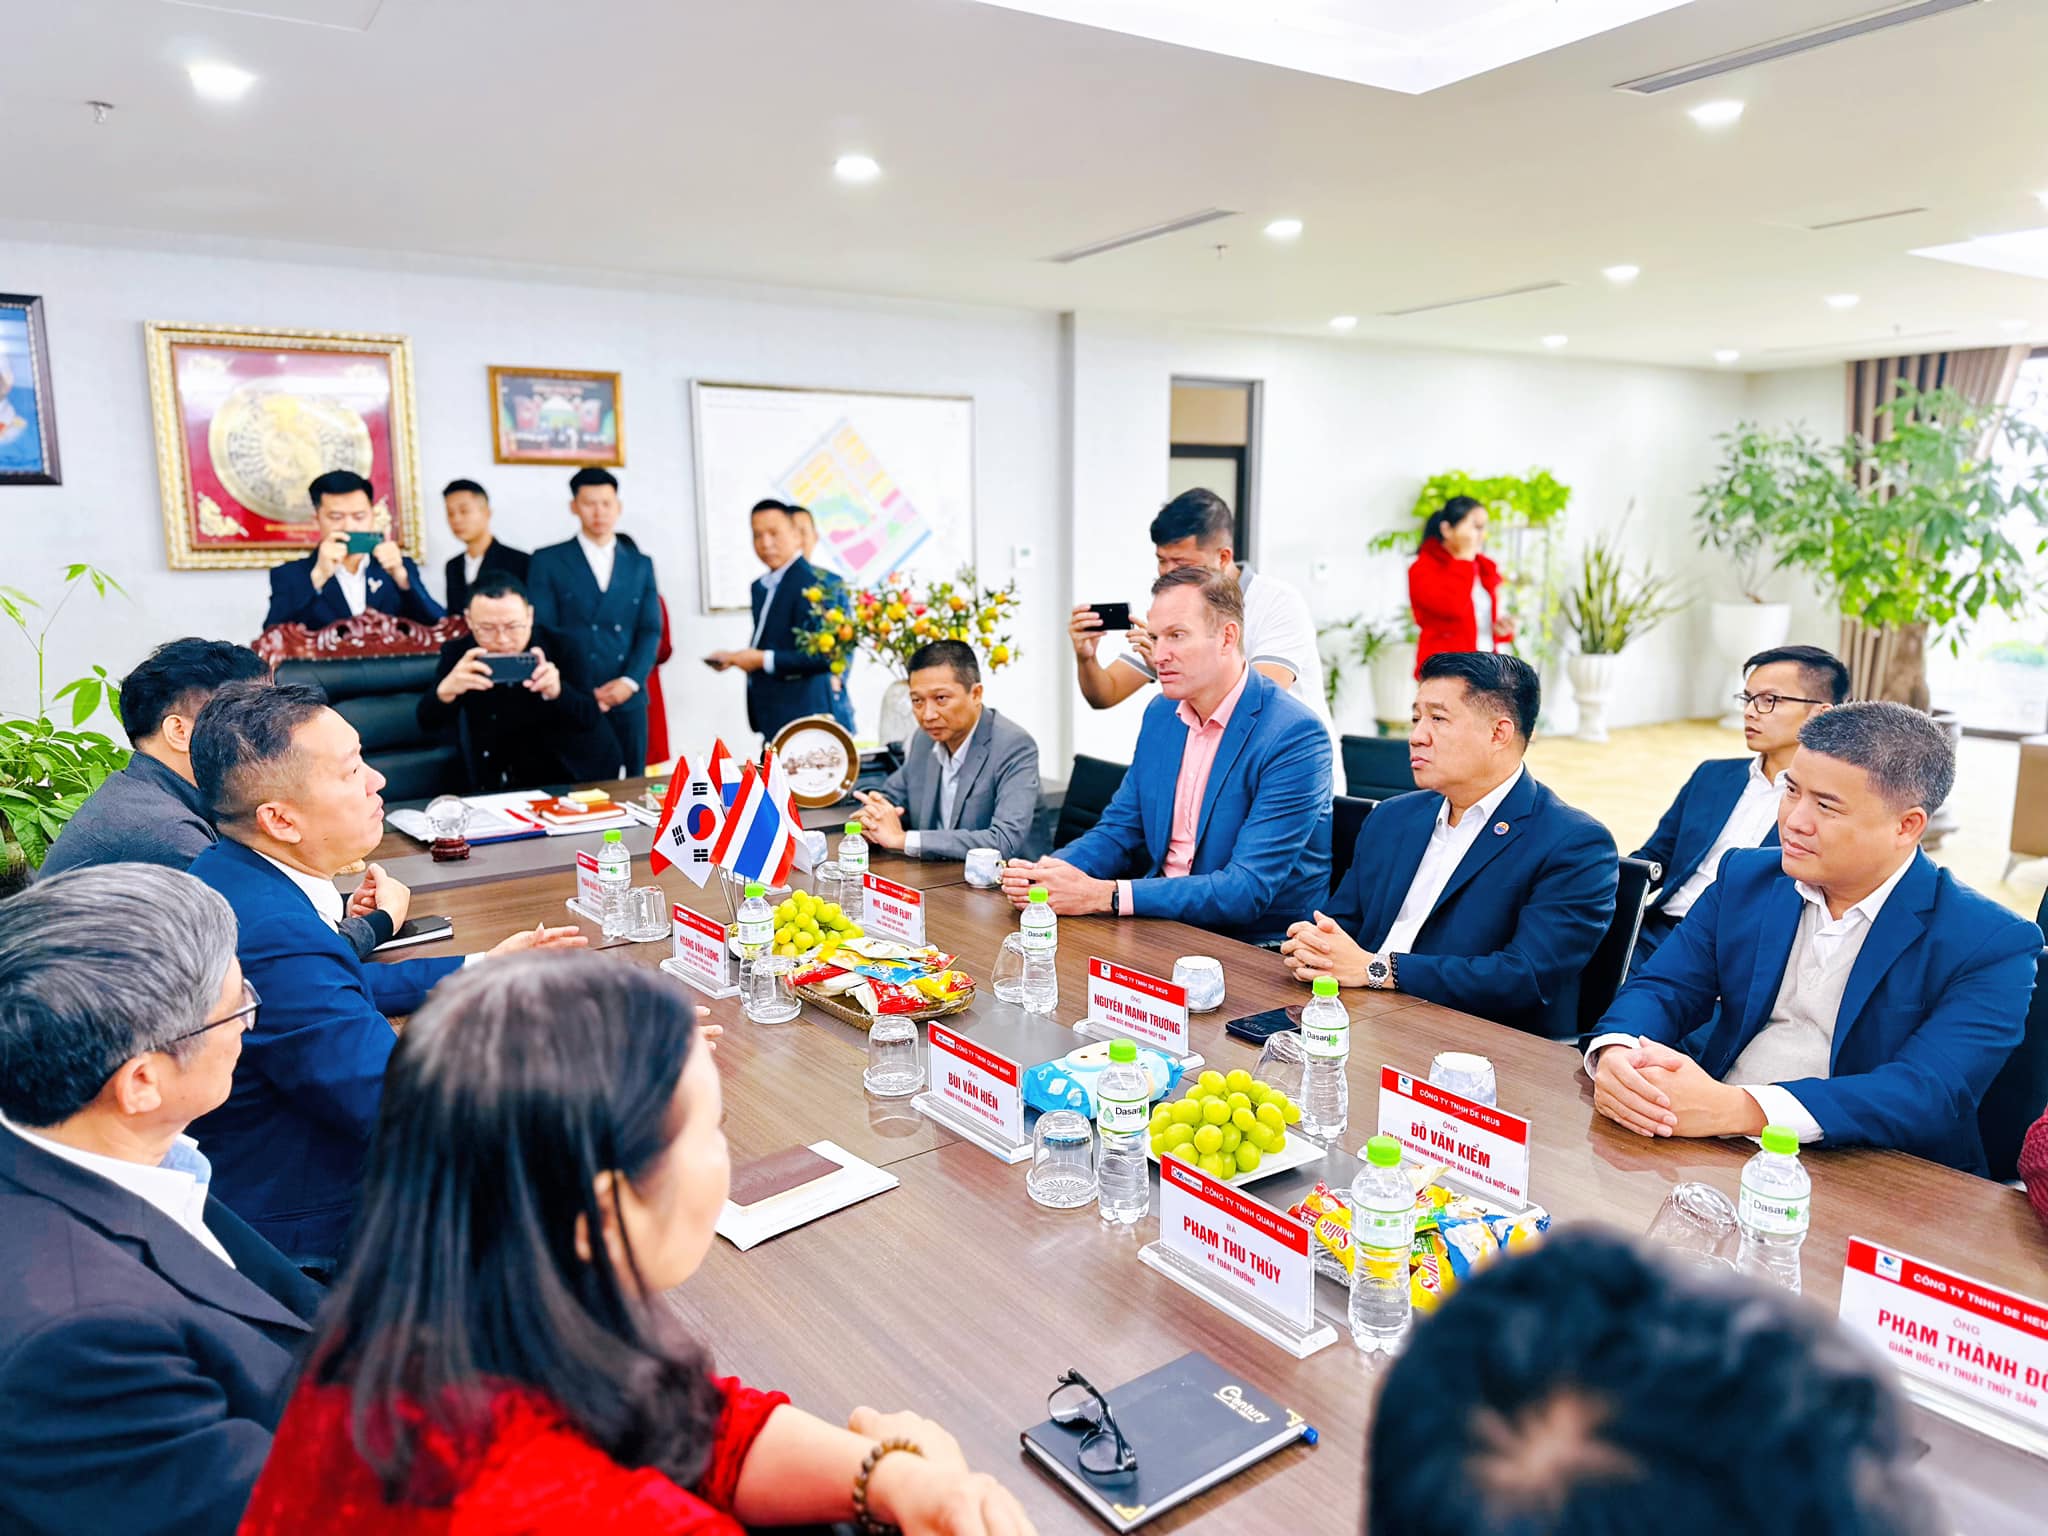 De Heus và Quan Minh ký hợp tác nuôi trồng thủy sản tại huyện đảo của Quảng Ninh, công suất 5-6 tỷ nhuyễn thể/năm- Ảnh 2.